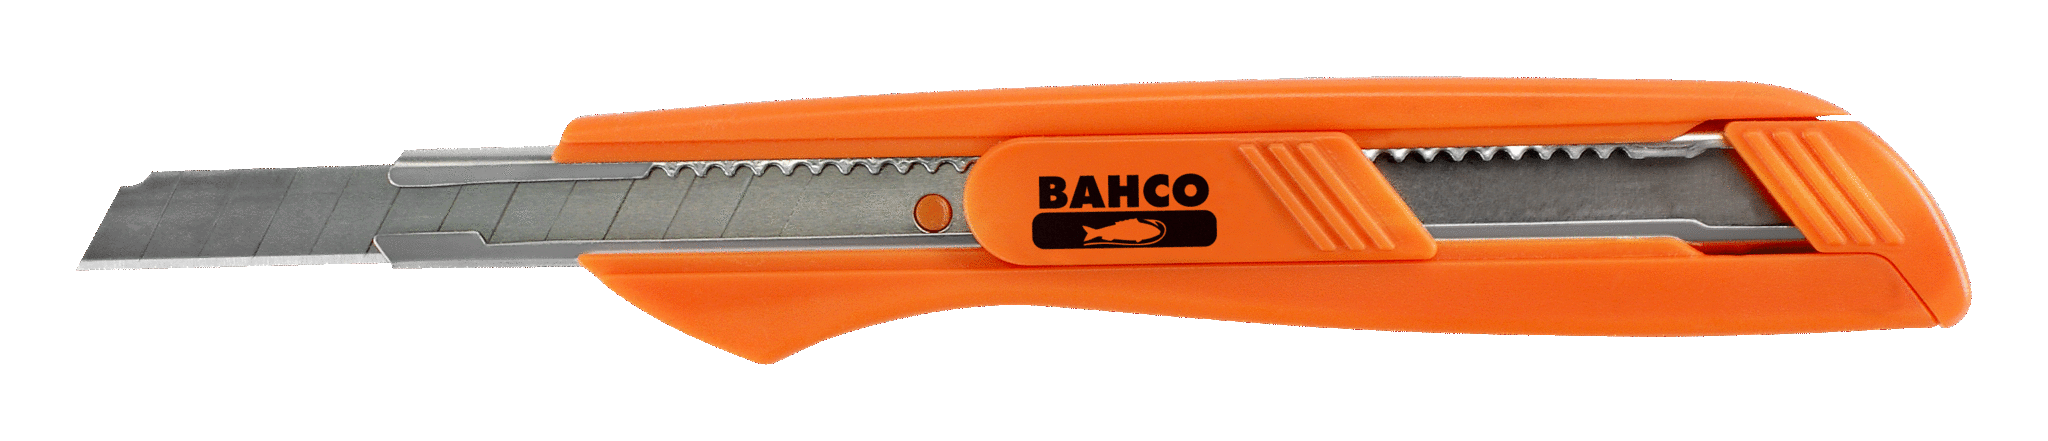 Nóż z odłamywanym ostrzem 9 mm BAHCO